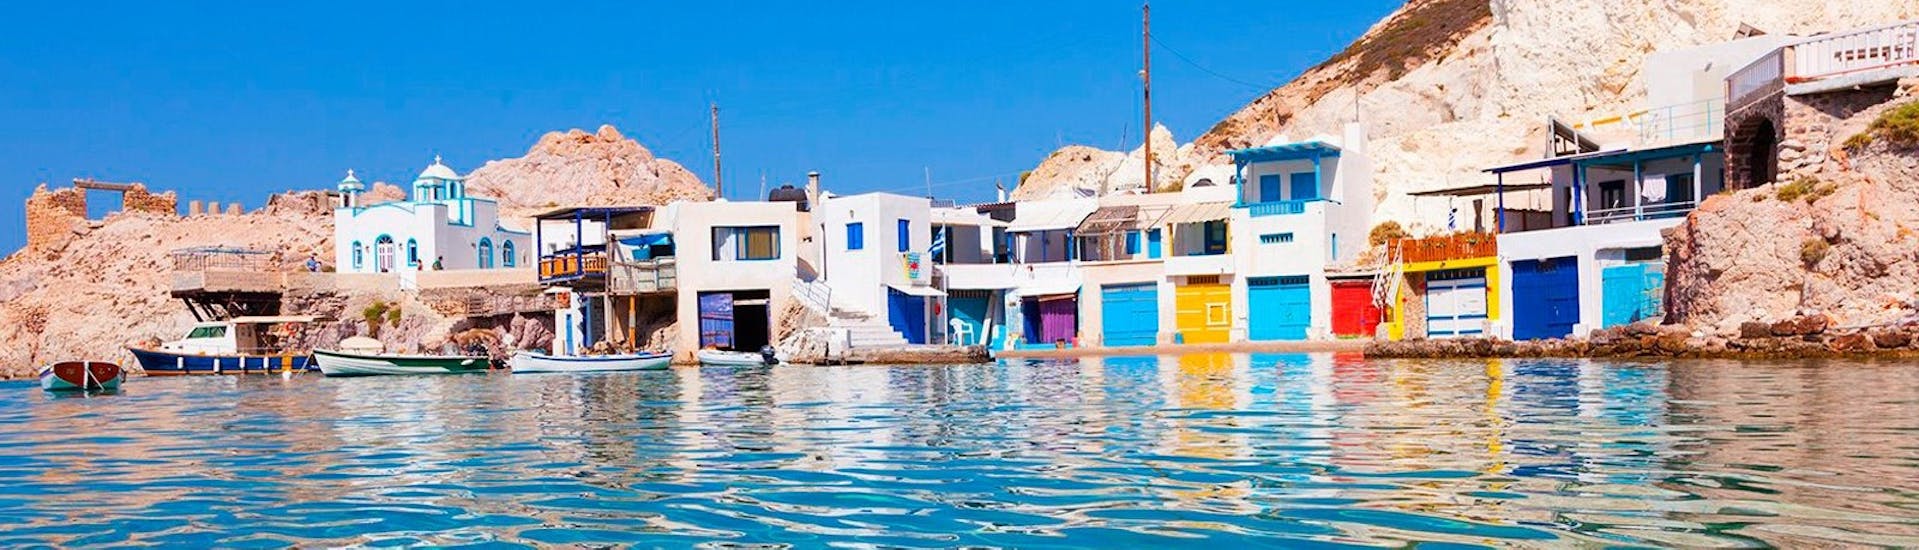 Il colorato villaggio di Klima, dove è stata scoperta la statua della Venere di Milo, nella Gita privata in yacht di lusso a Folegandros, Sikinos, Polyaigos e Kimolos con Indigo Yacht Milos.